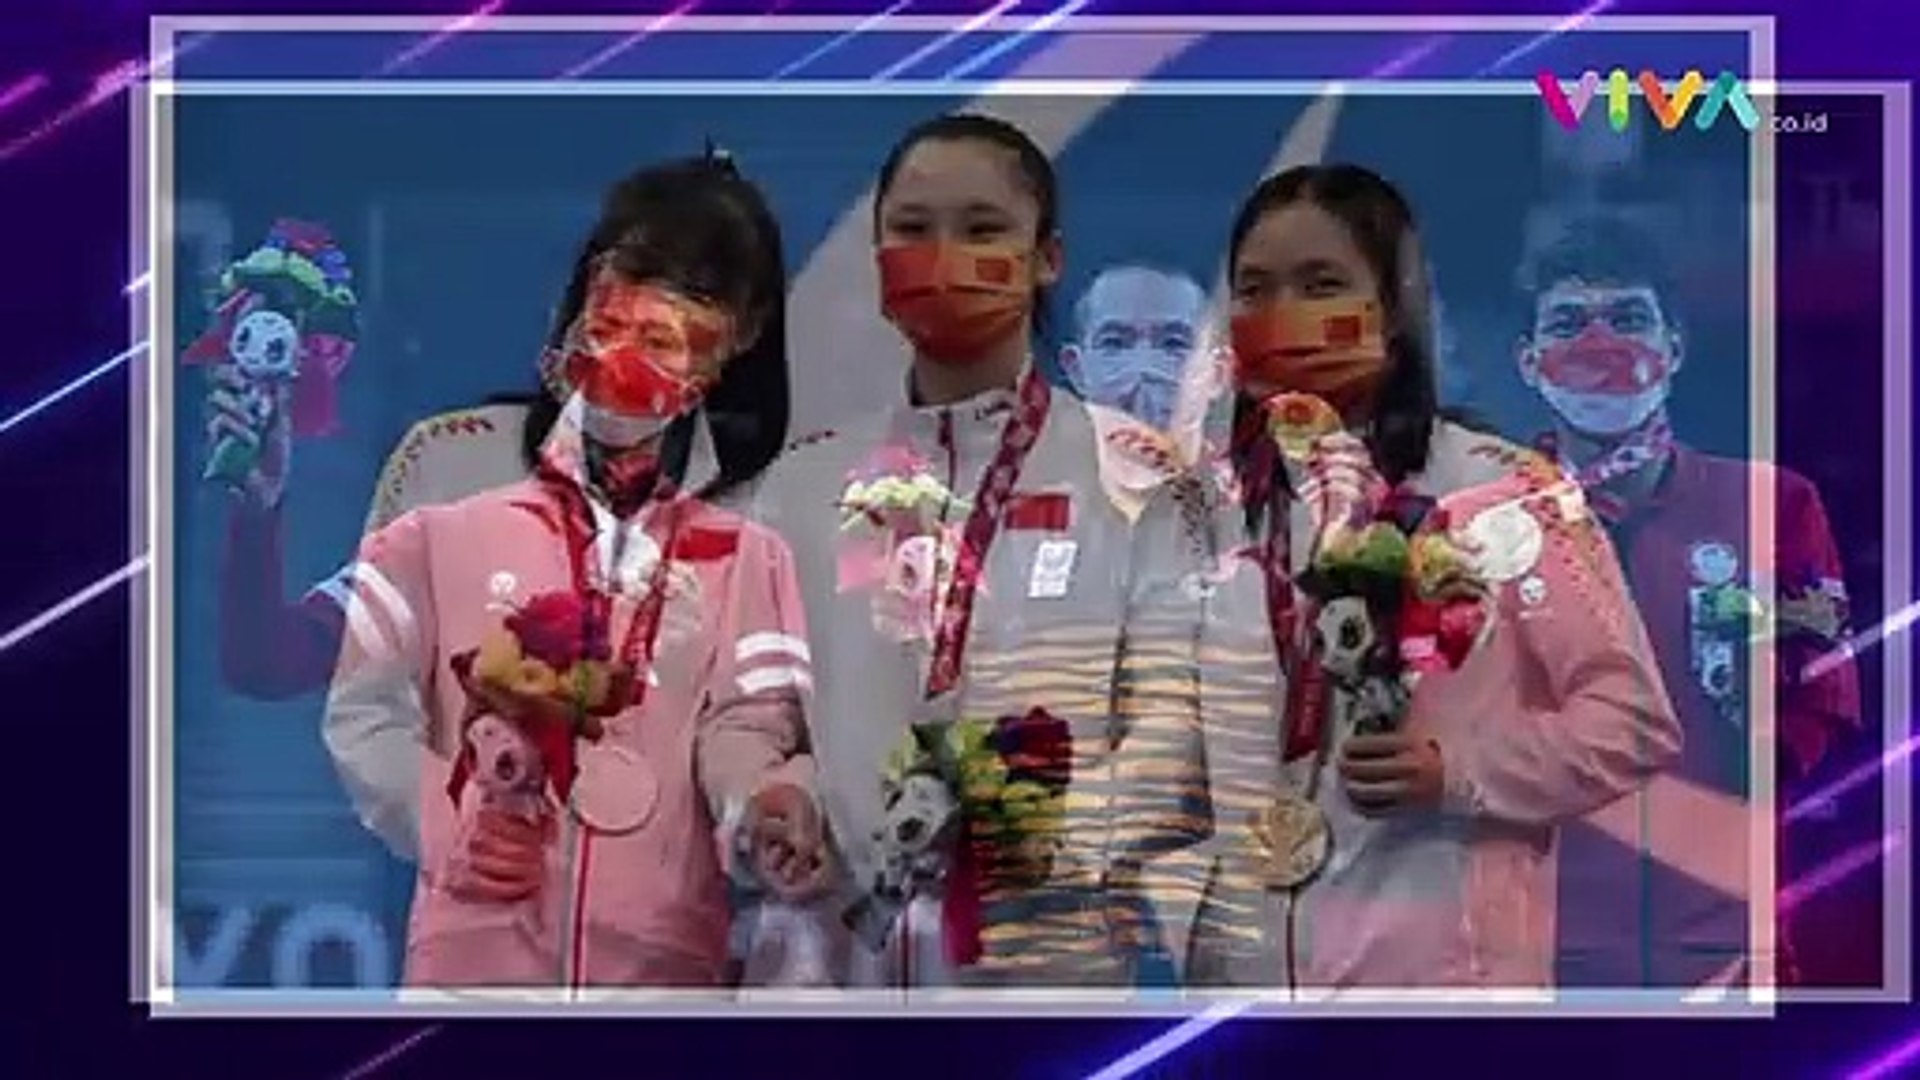 Hari Terakhir Paralimpiade, Indonesia Sibuk Panen Medali!